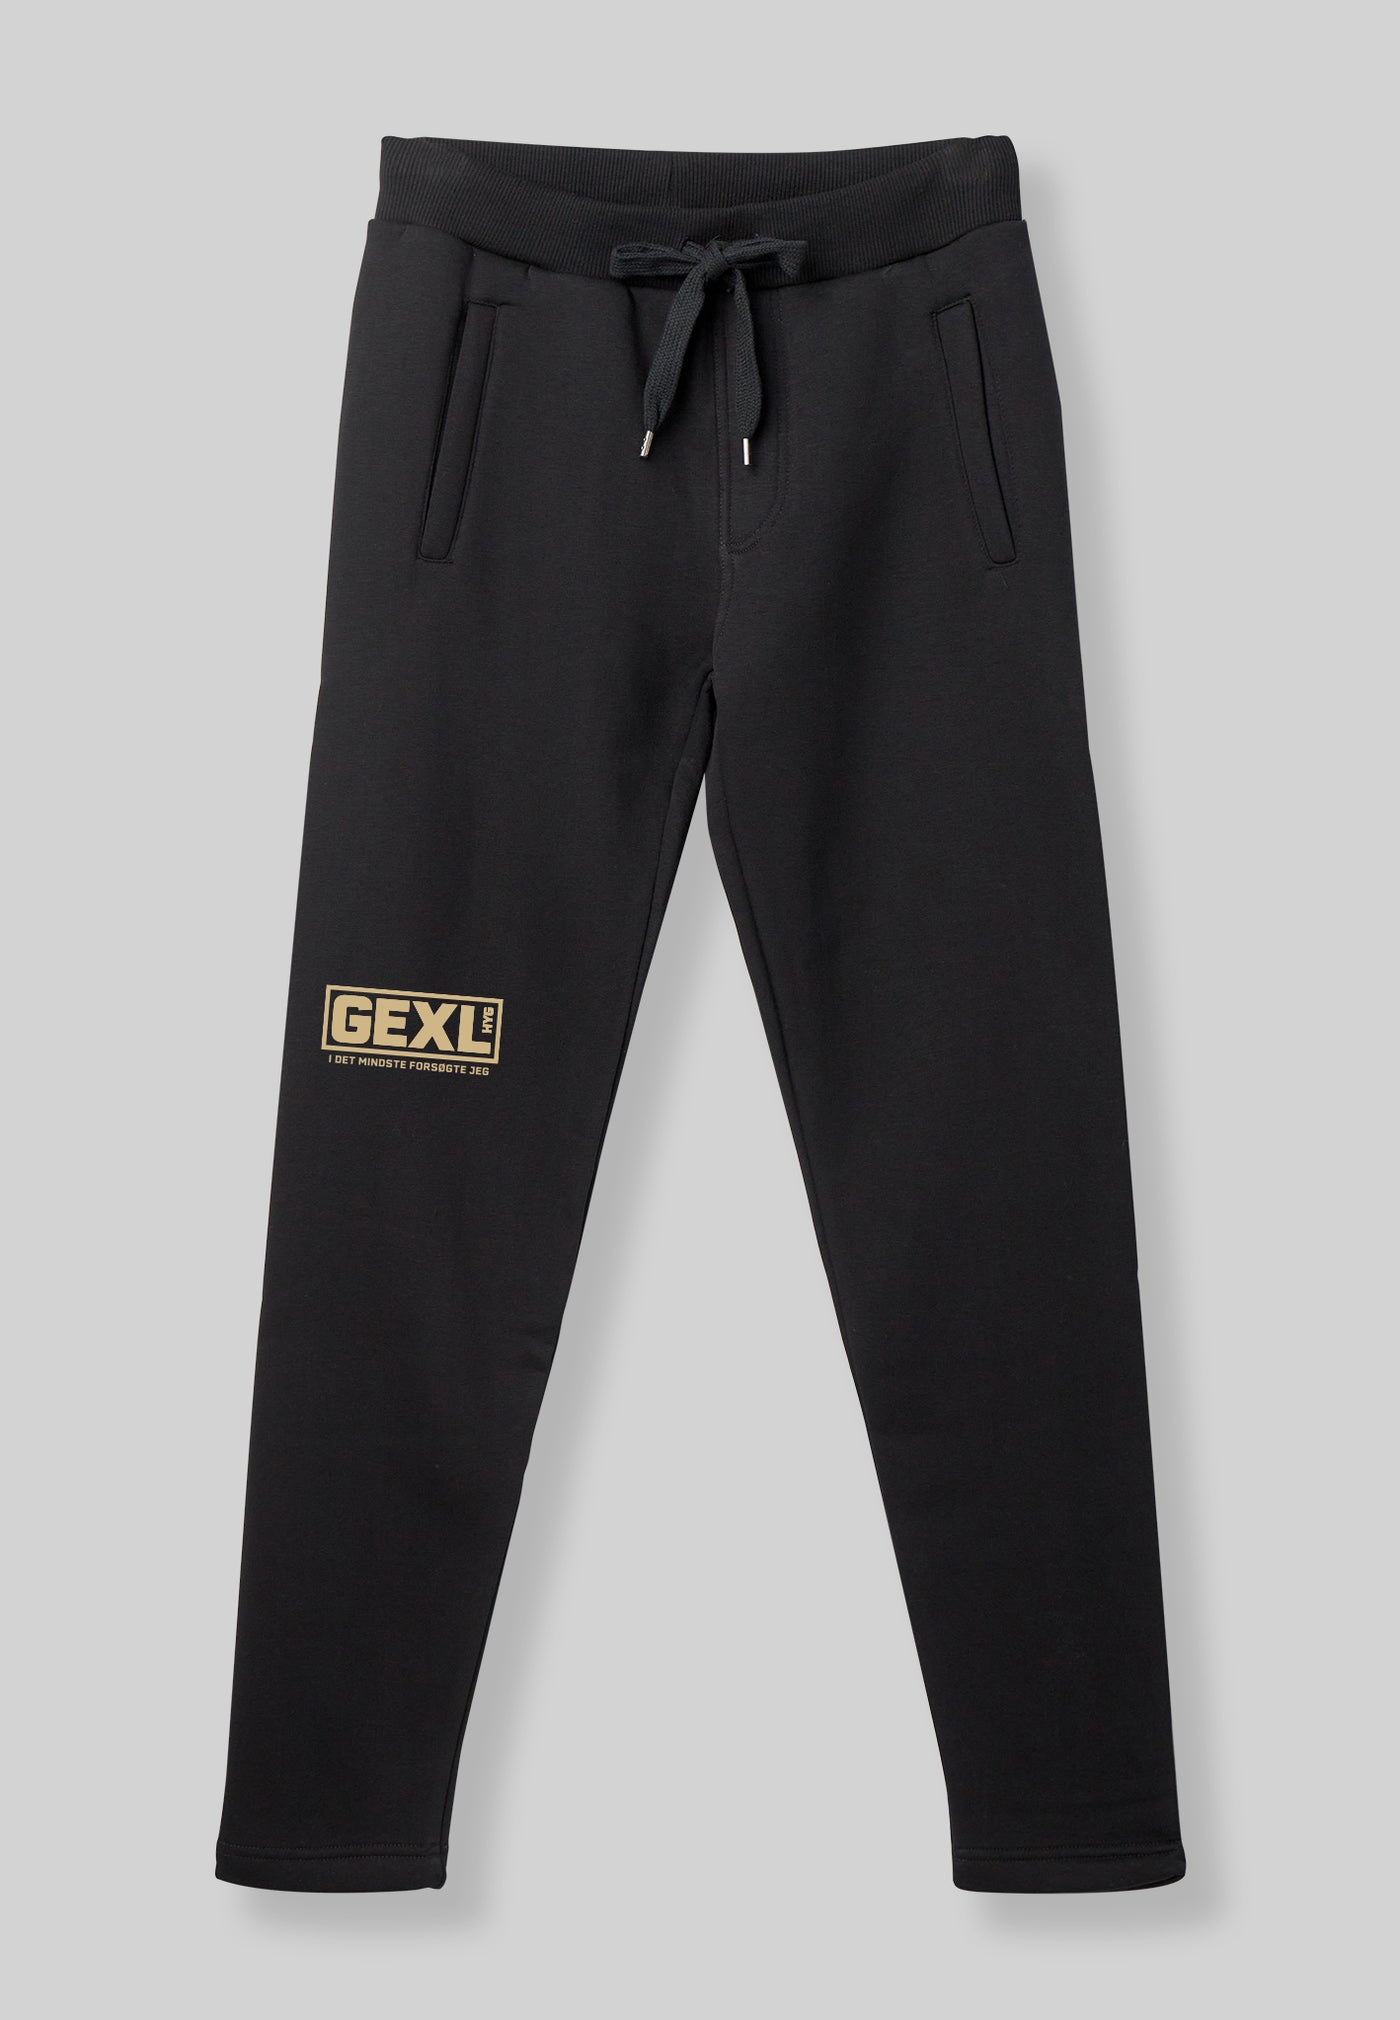 GEX - GEXL Sweatpants - Sort